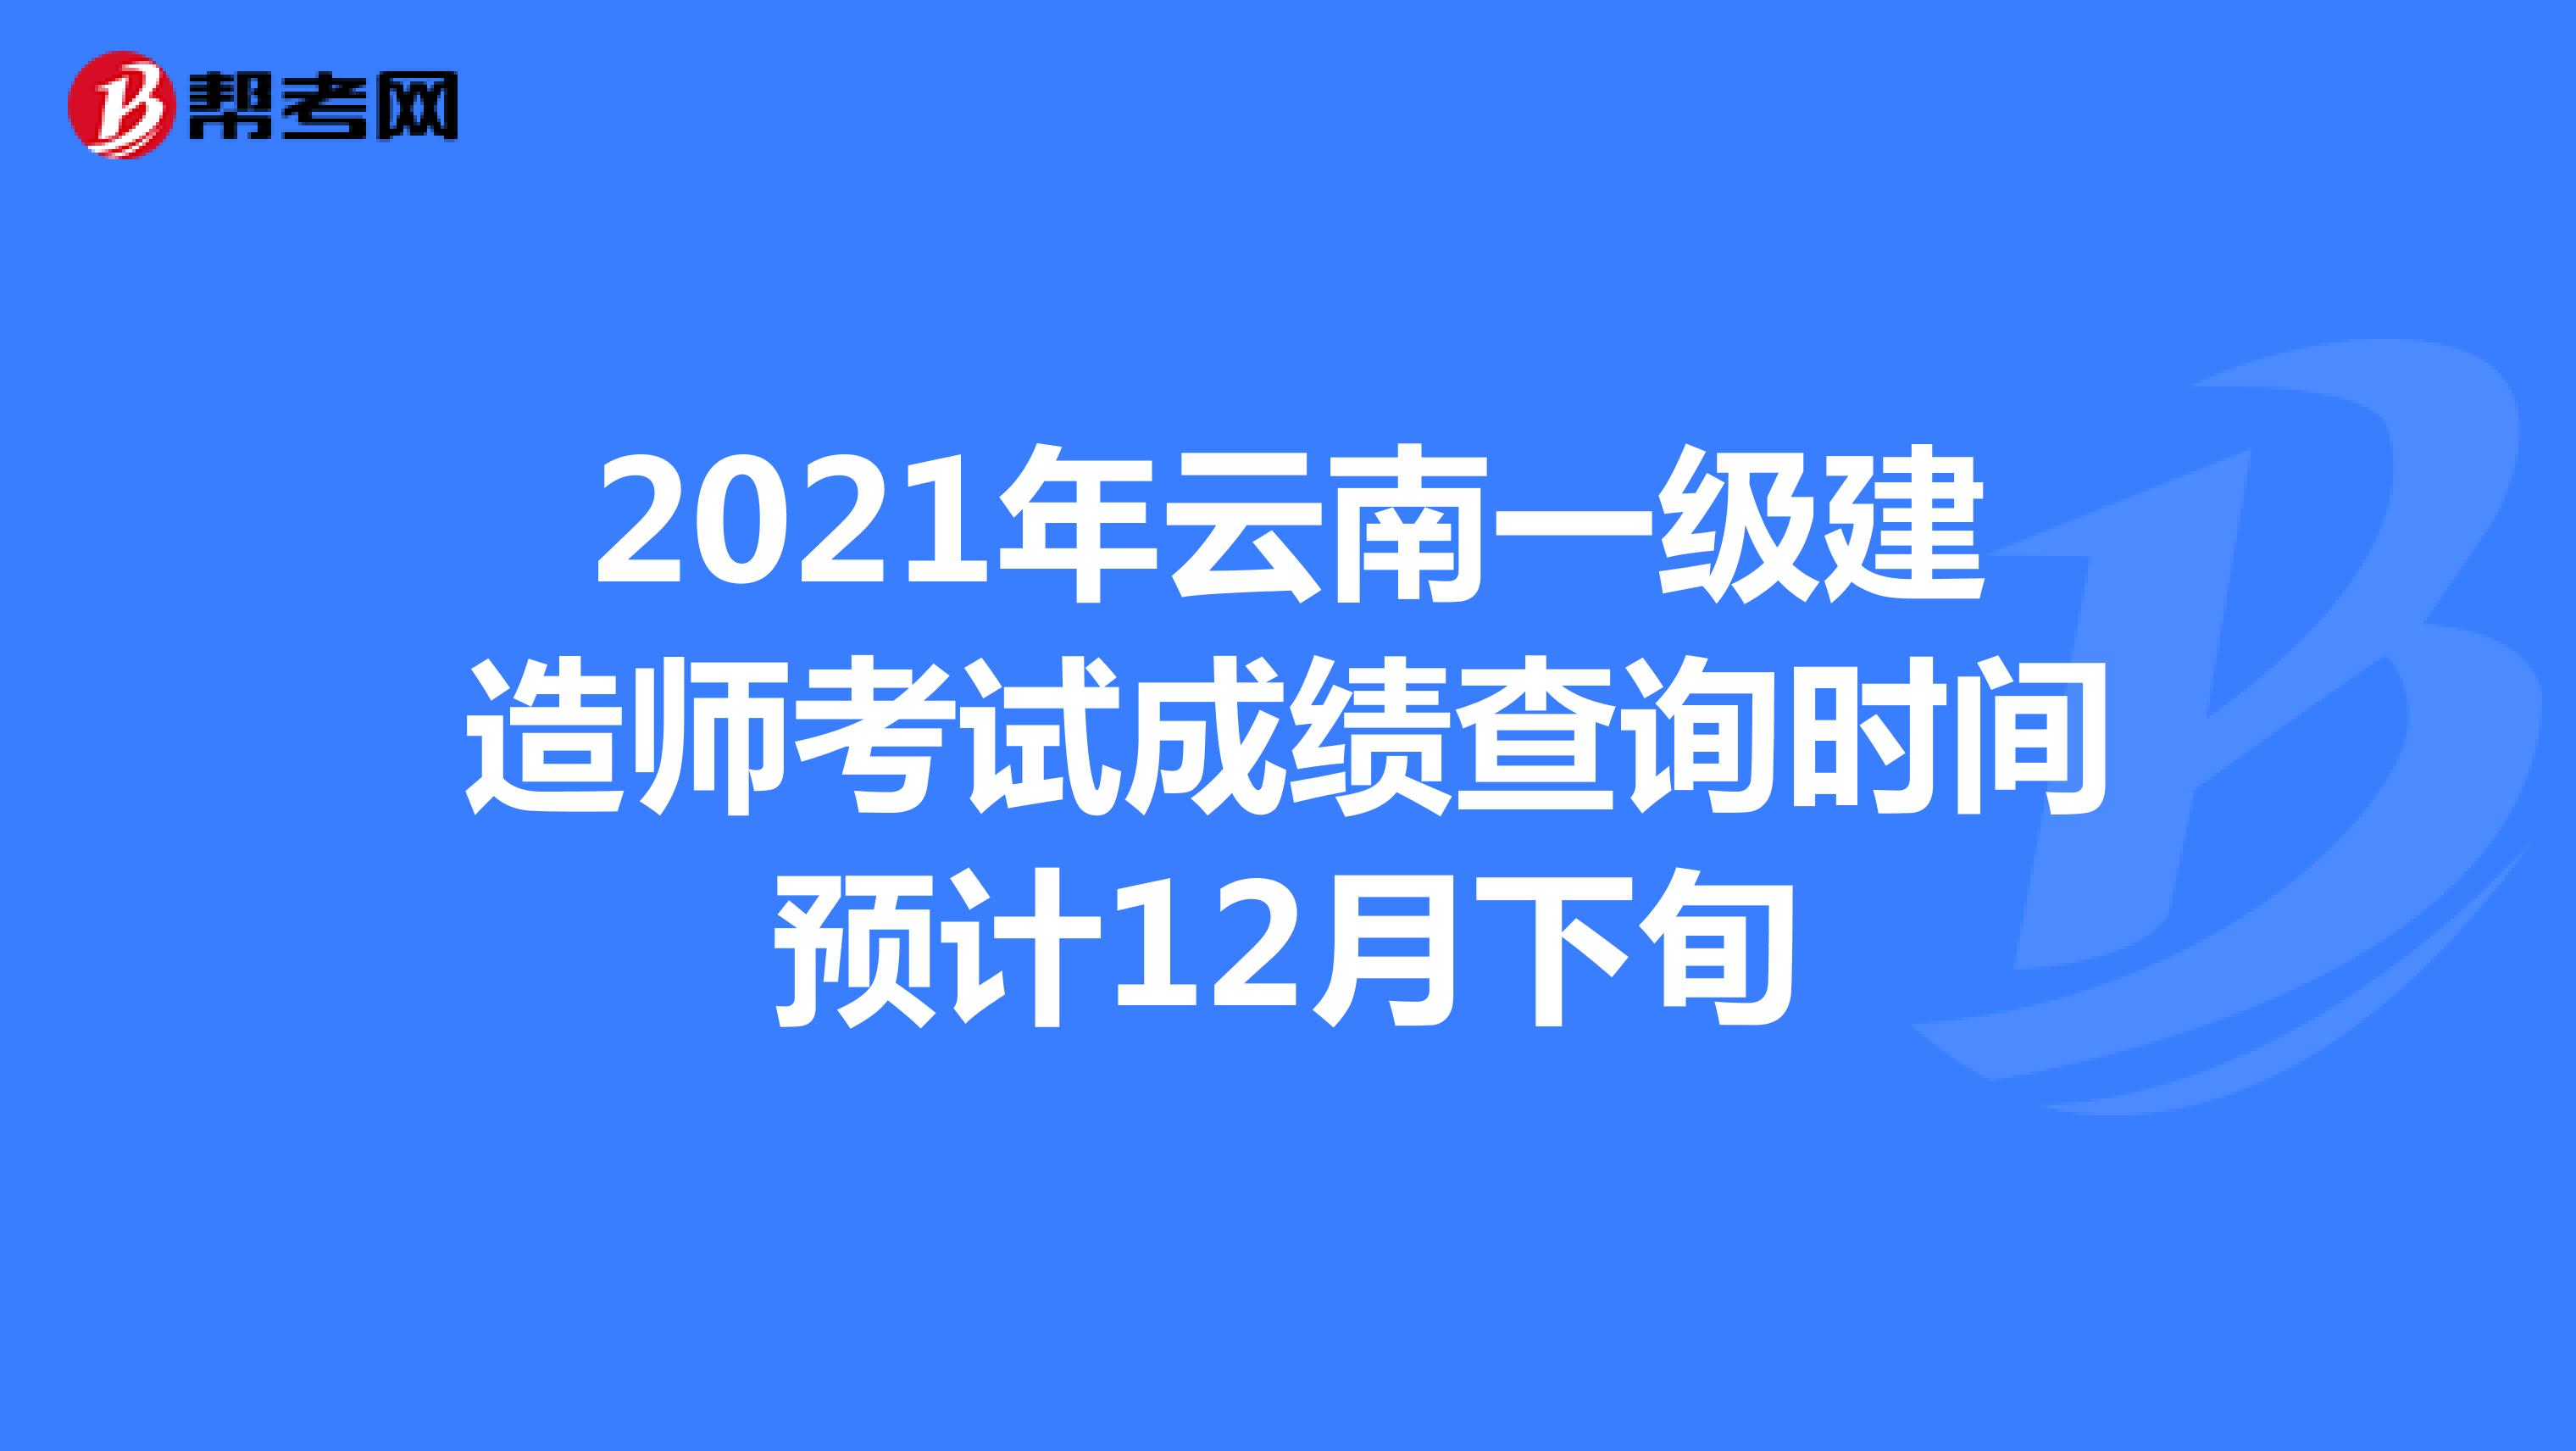 2021年云南一级建造师考试成绩查询时间预计12月下旬